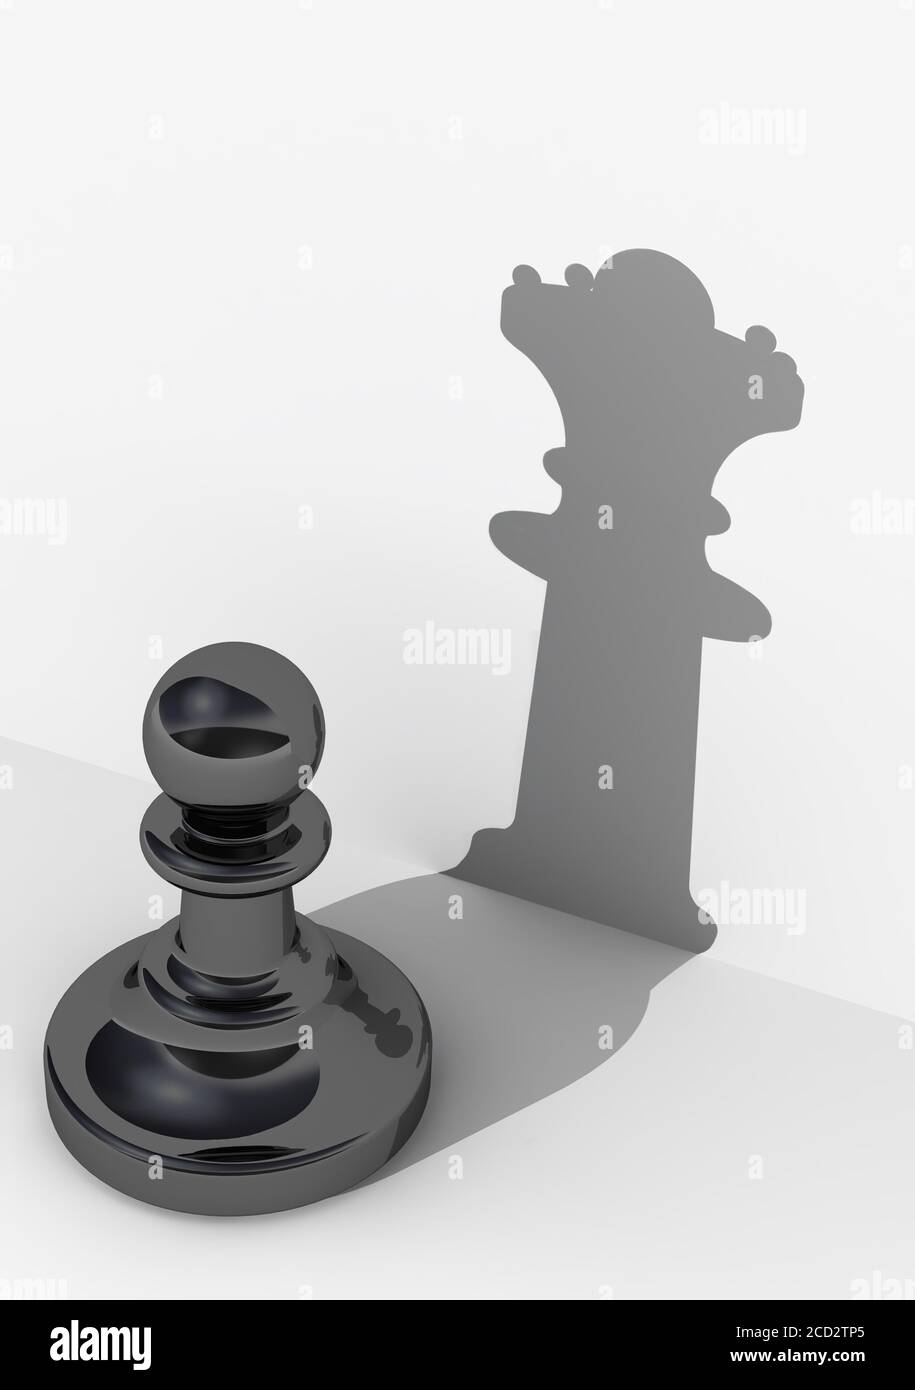 Pawn avec une grande estime de soi. Pièce d'échecs. Pion noir à l'ombre de la reine. Le concept de très haute estime de soi. Illustration 3D. Isolé Banque D'Images